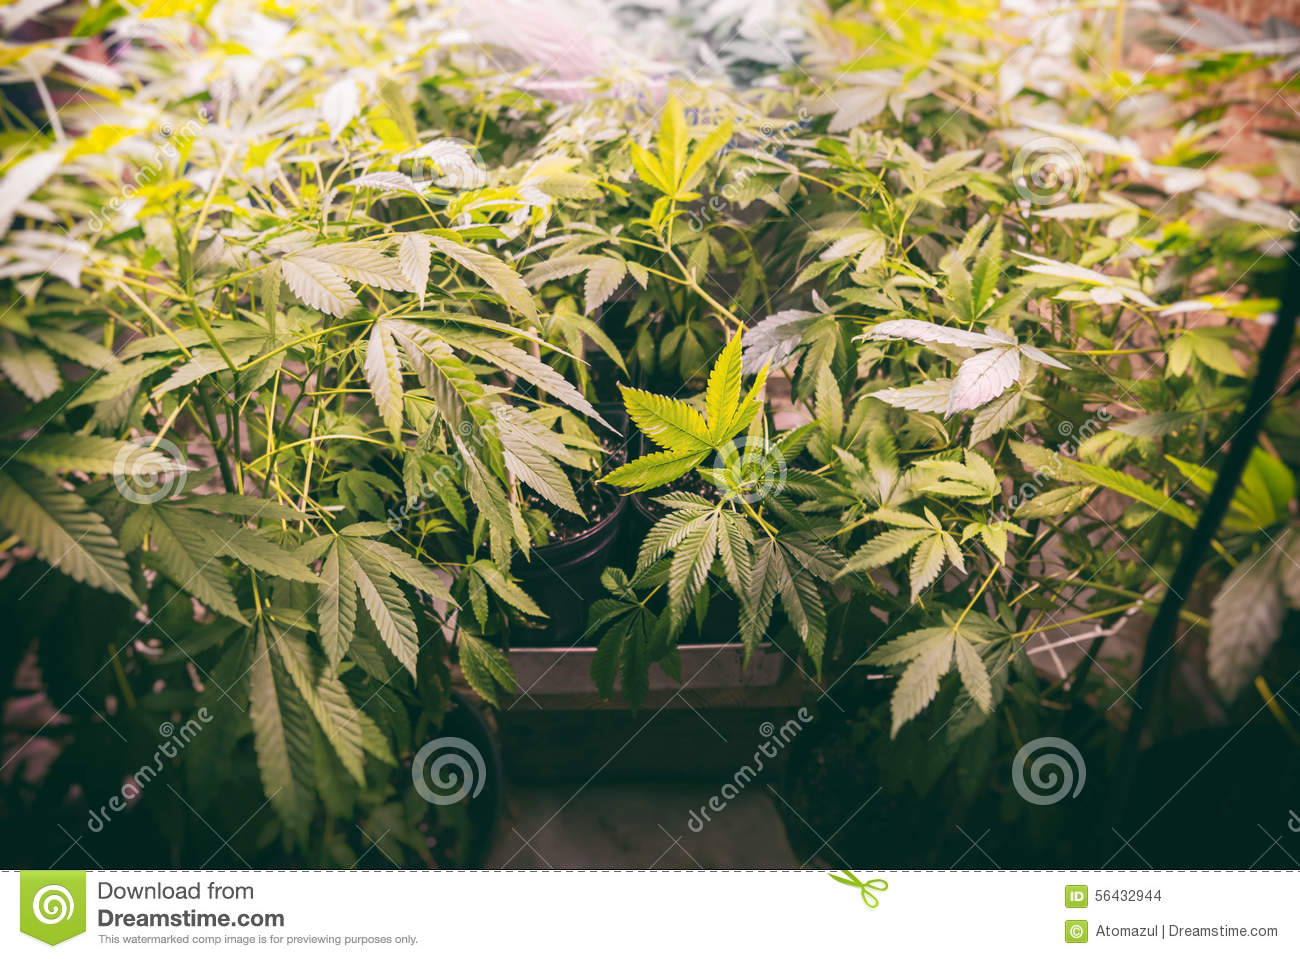 Marijuana Plants Growing Under Artificial Lights In A Grow Op 